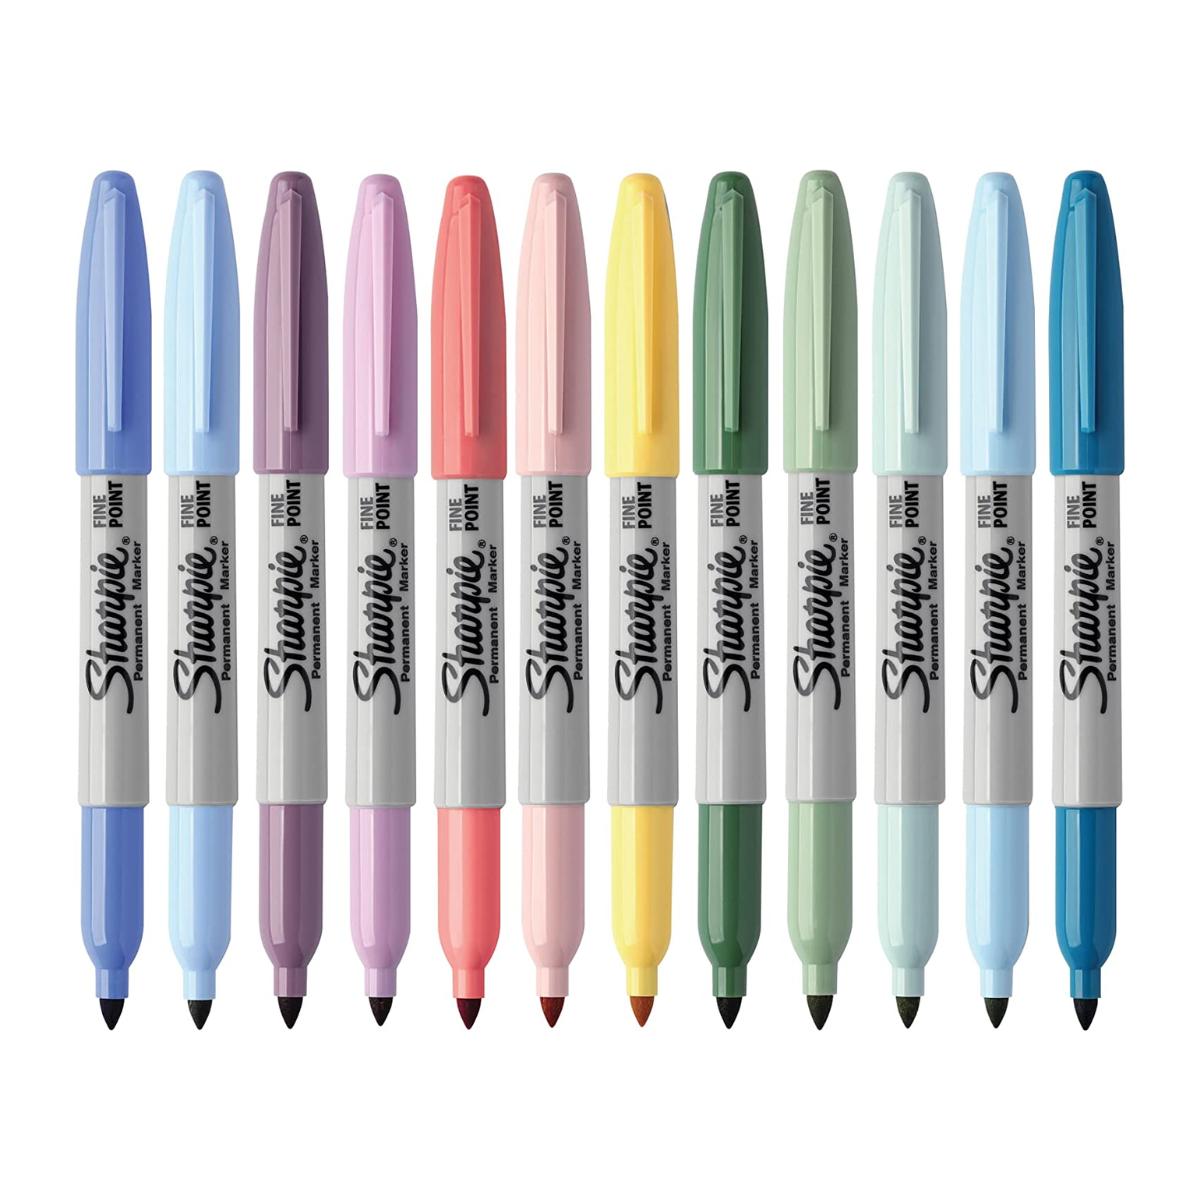 Sharpie Juego de marcadores permanentes de edición especial, punta fina,  colores surtidos, 21 unidades